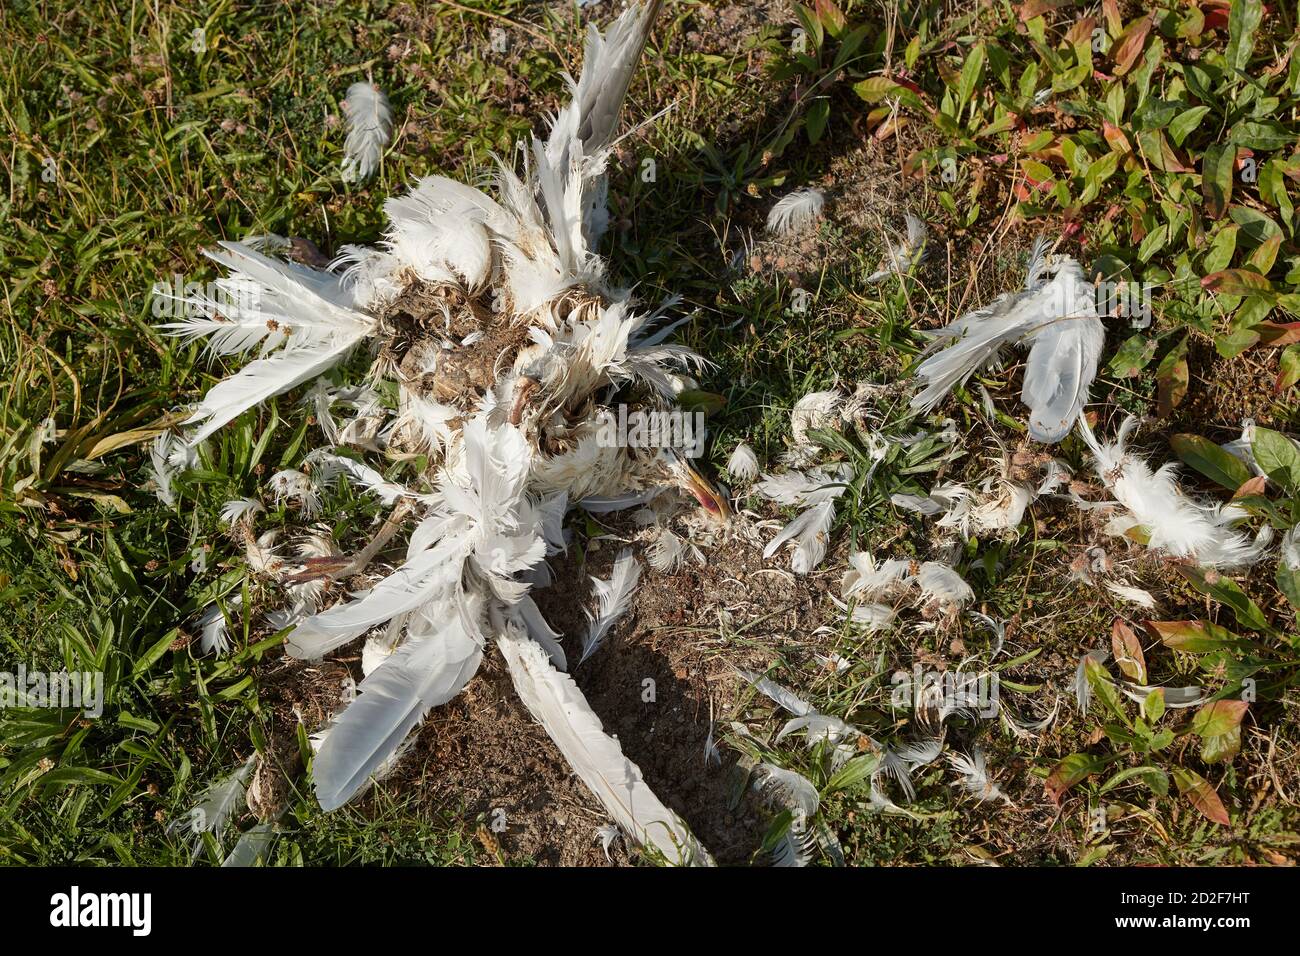 Toter Vogelkörper zersetzt Möwe Stockfoto